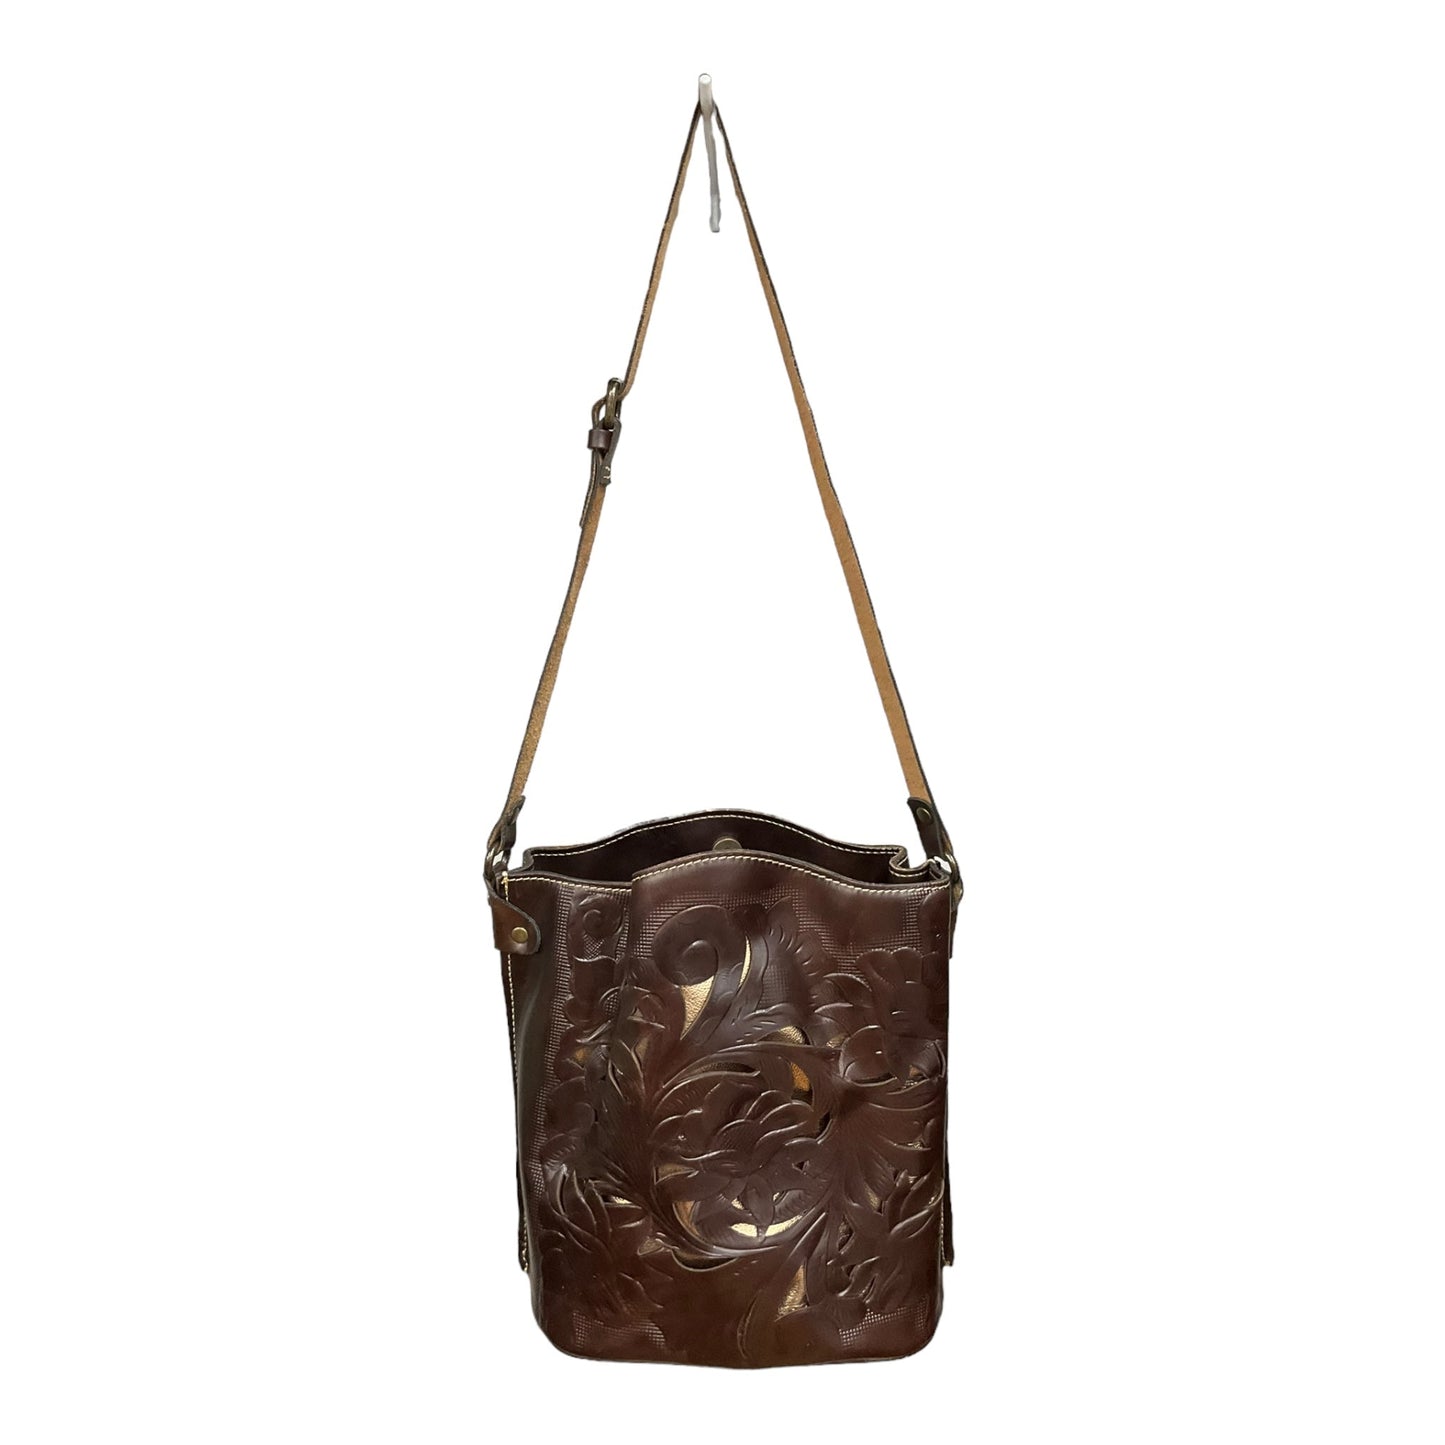 Handbag Leather Patricia Nash, Size Large